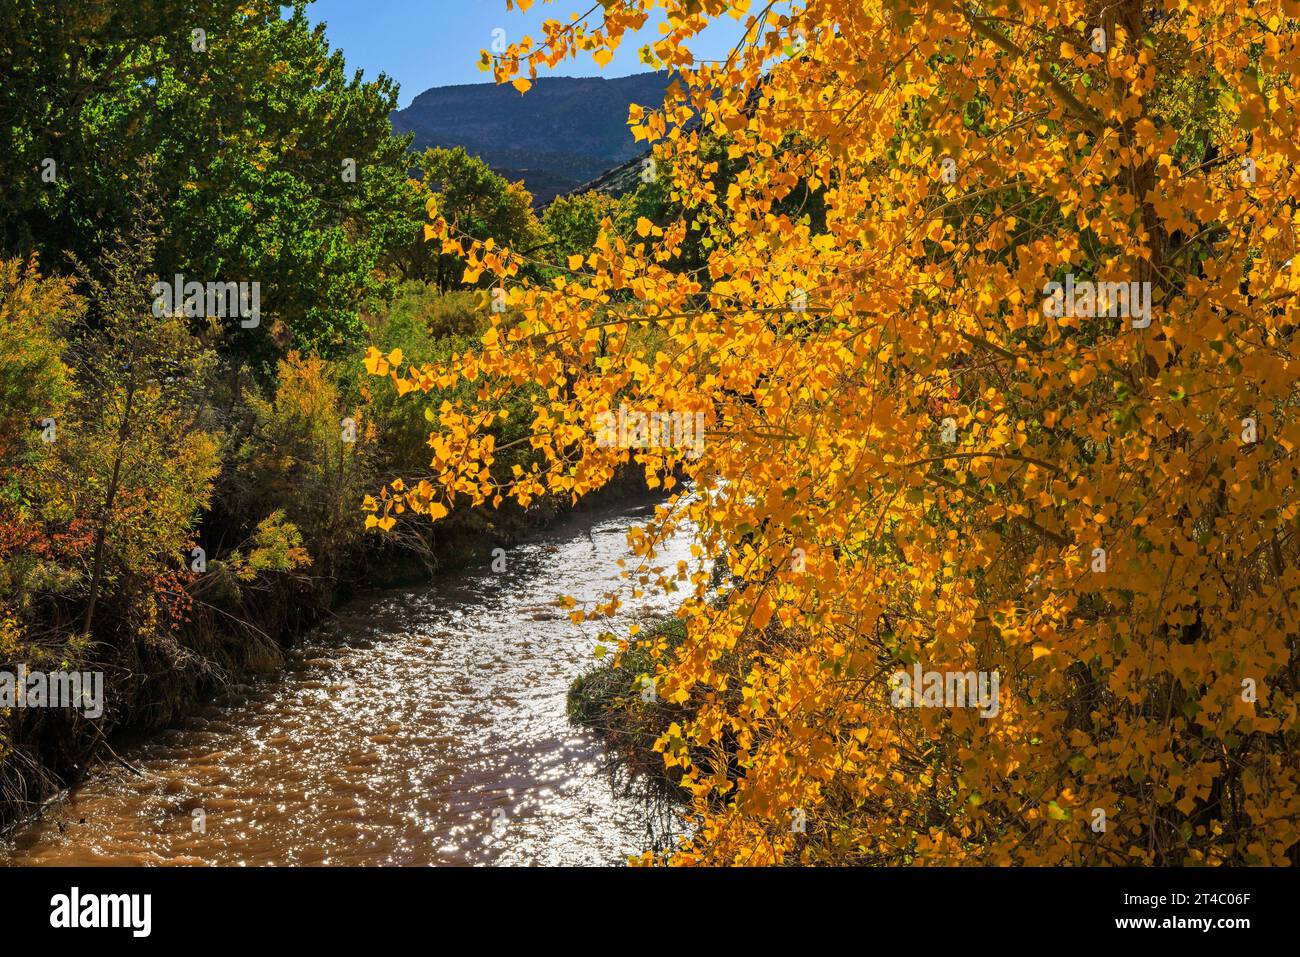 Ceci est une vue des couleurs d'automne le long de la rivière Fremont dans la région de Gifford Homestead du parc national Capitol Reef, comté de Wayne, Utah, États-Unis. Banque D'Images